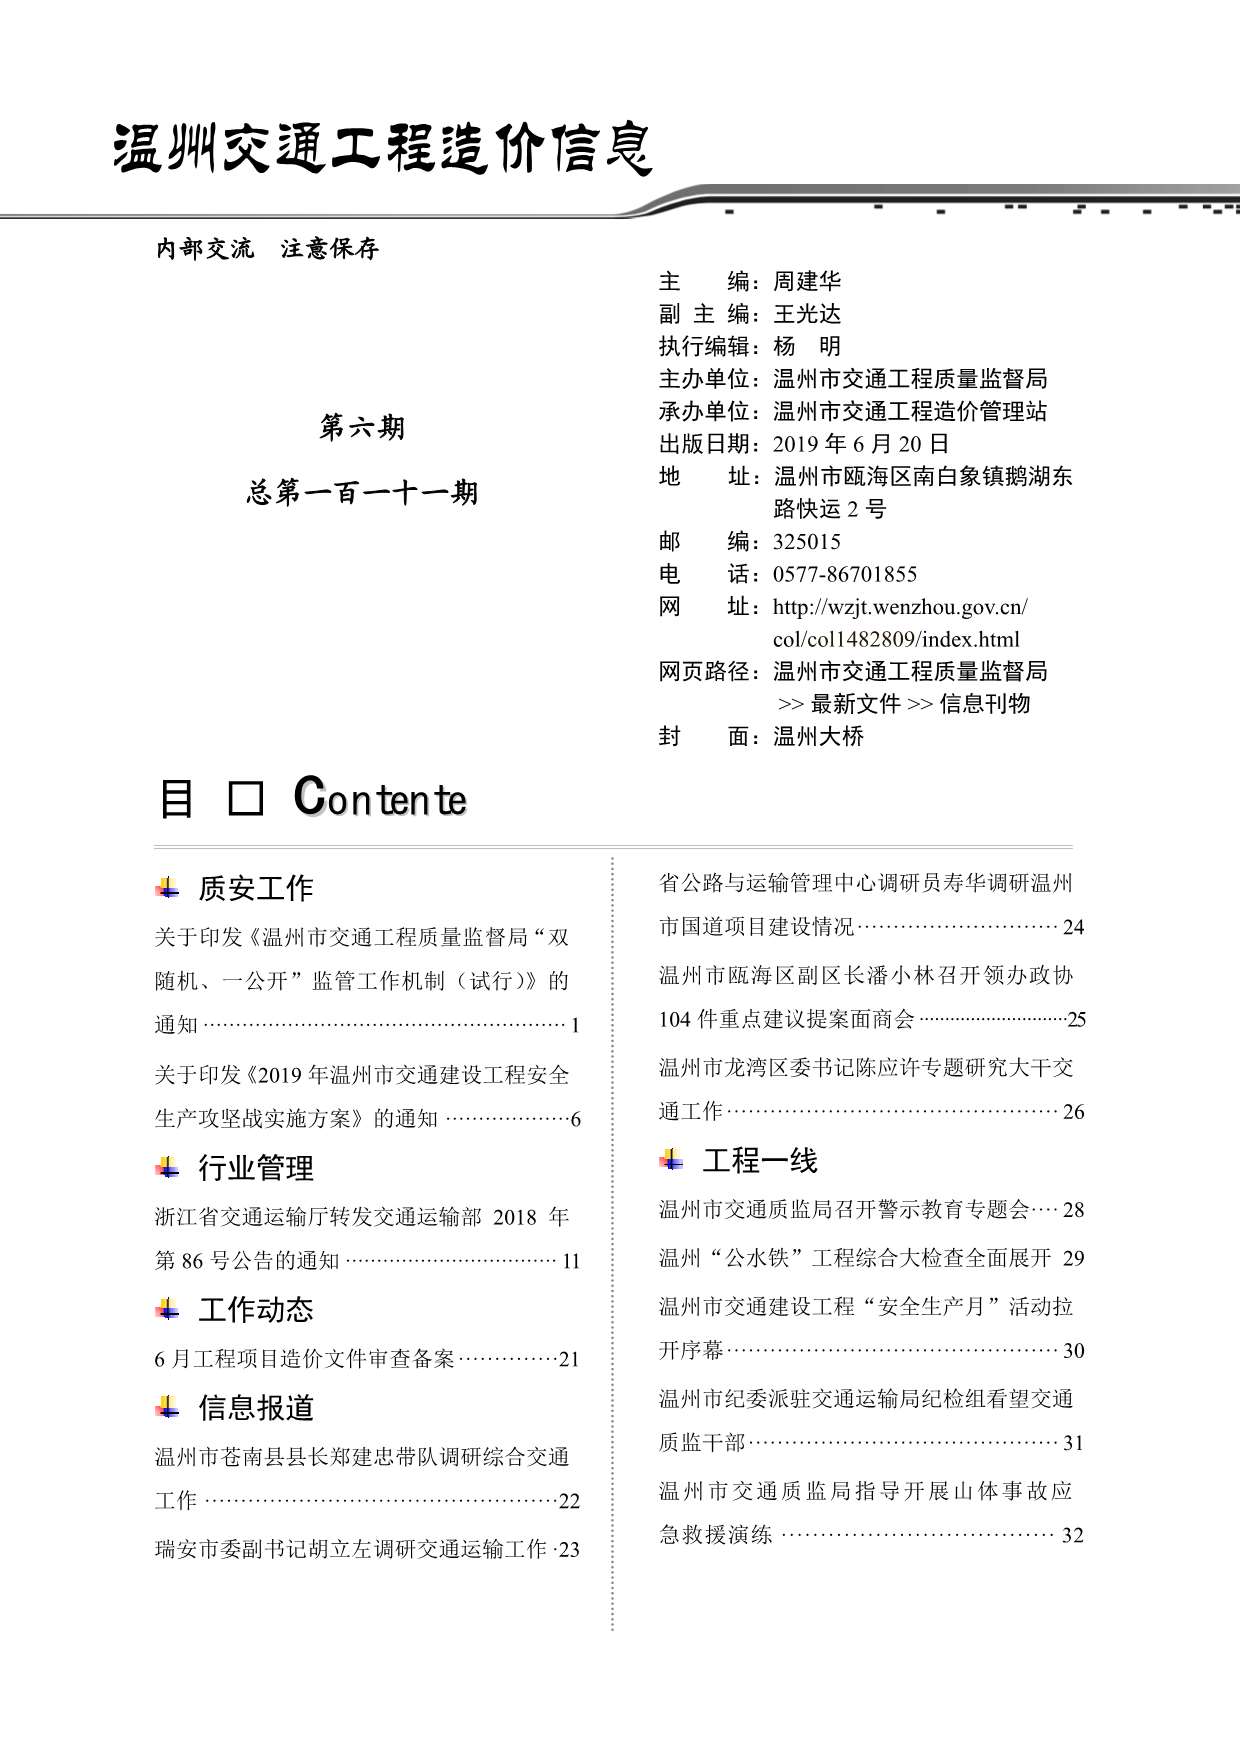 2019年6期温州交通信息价pdf扫描件